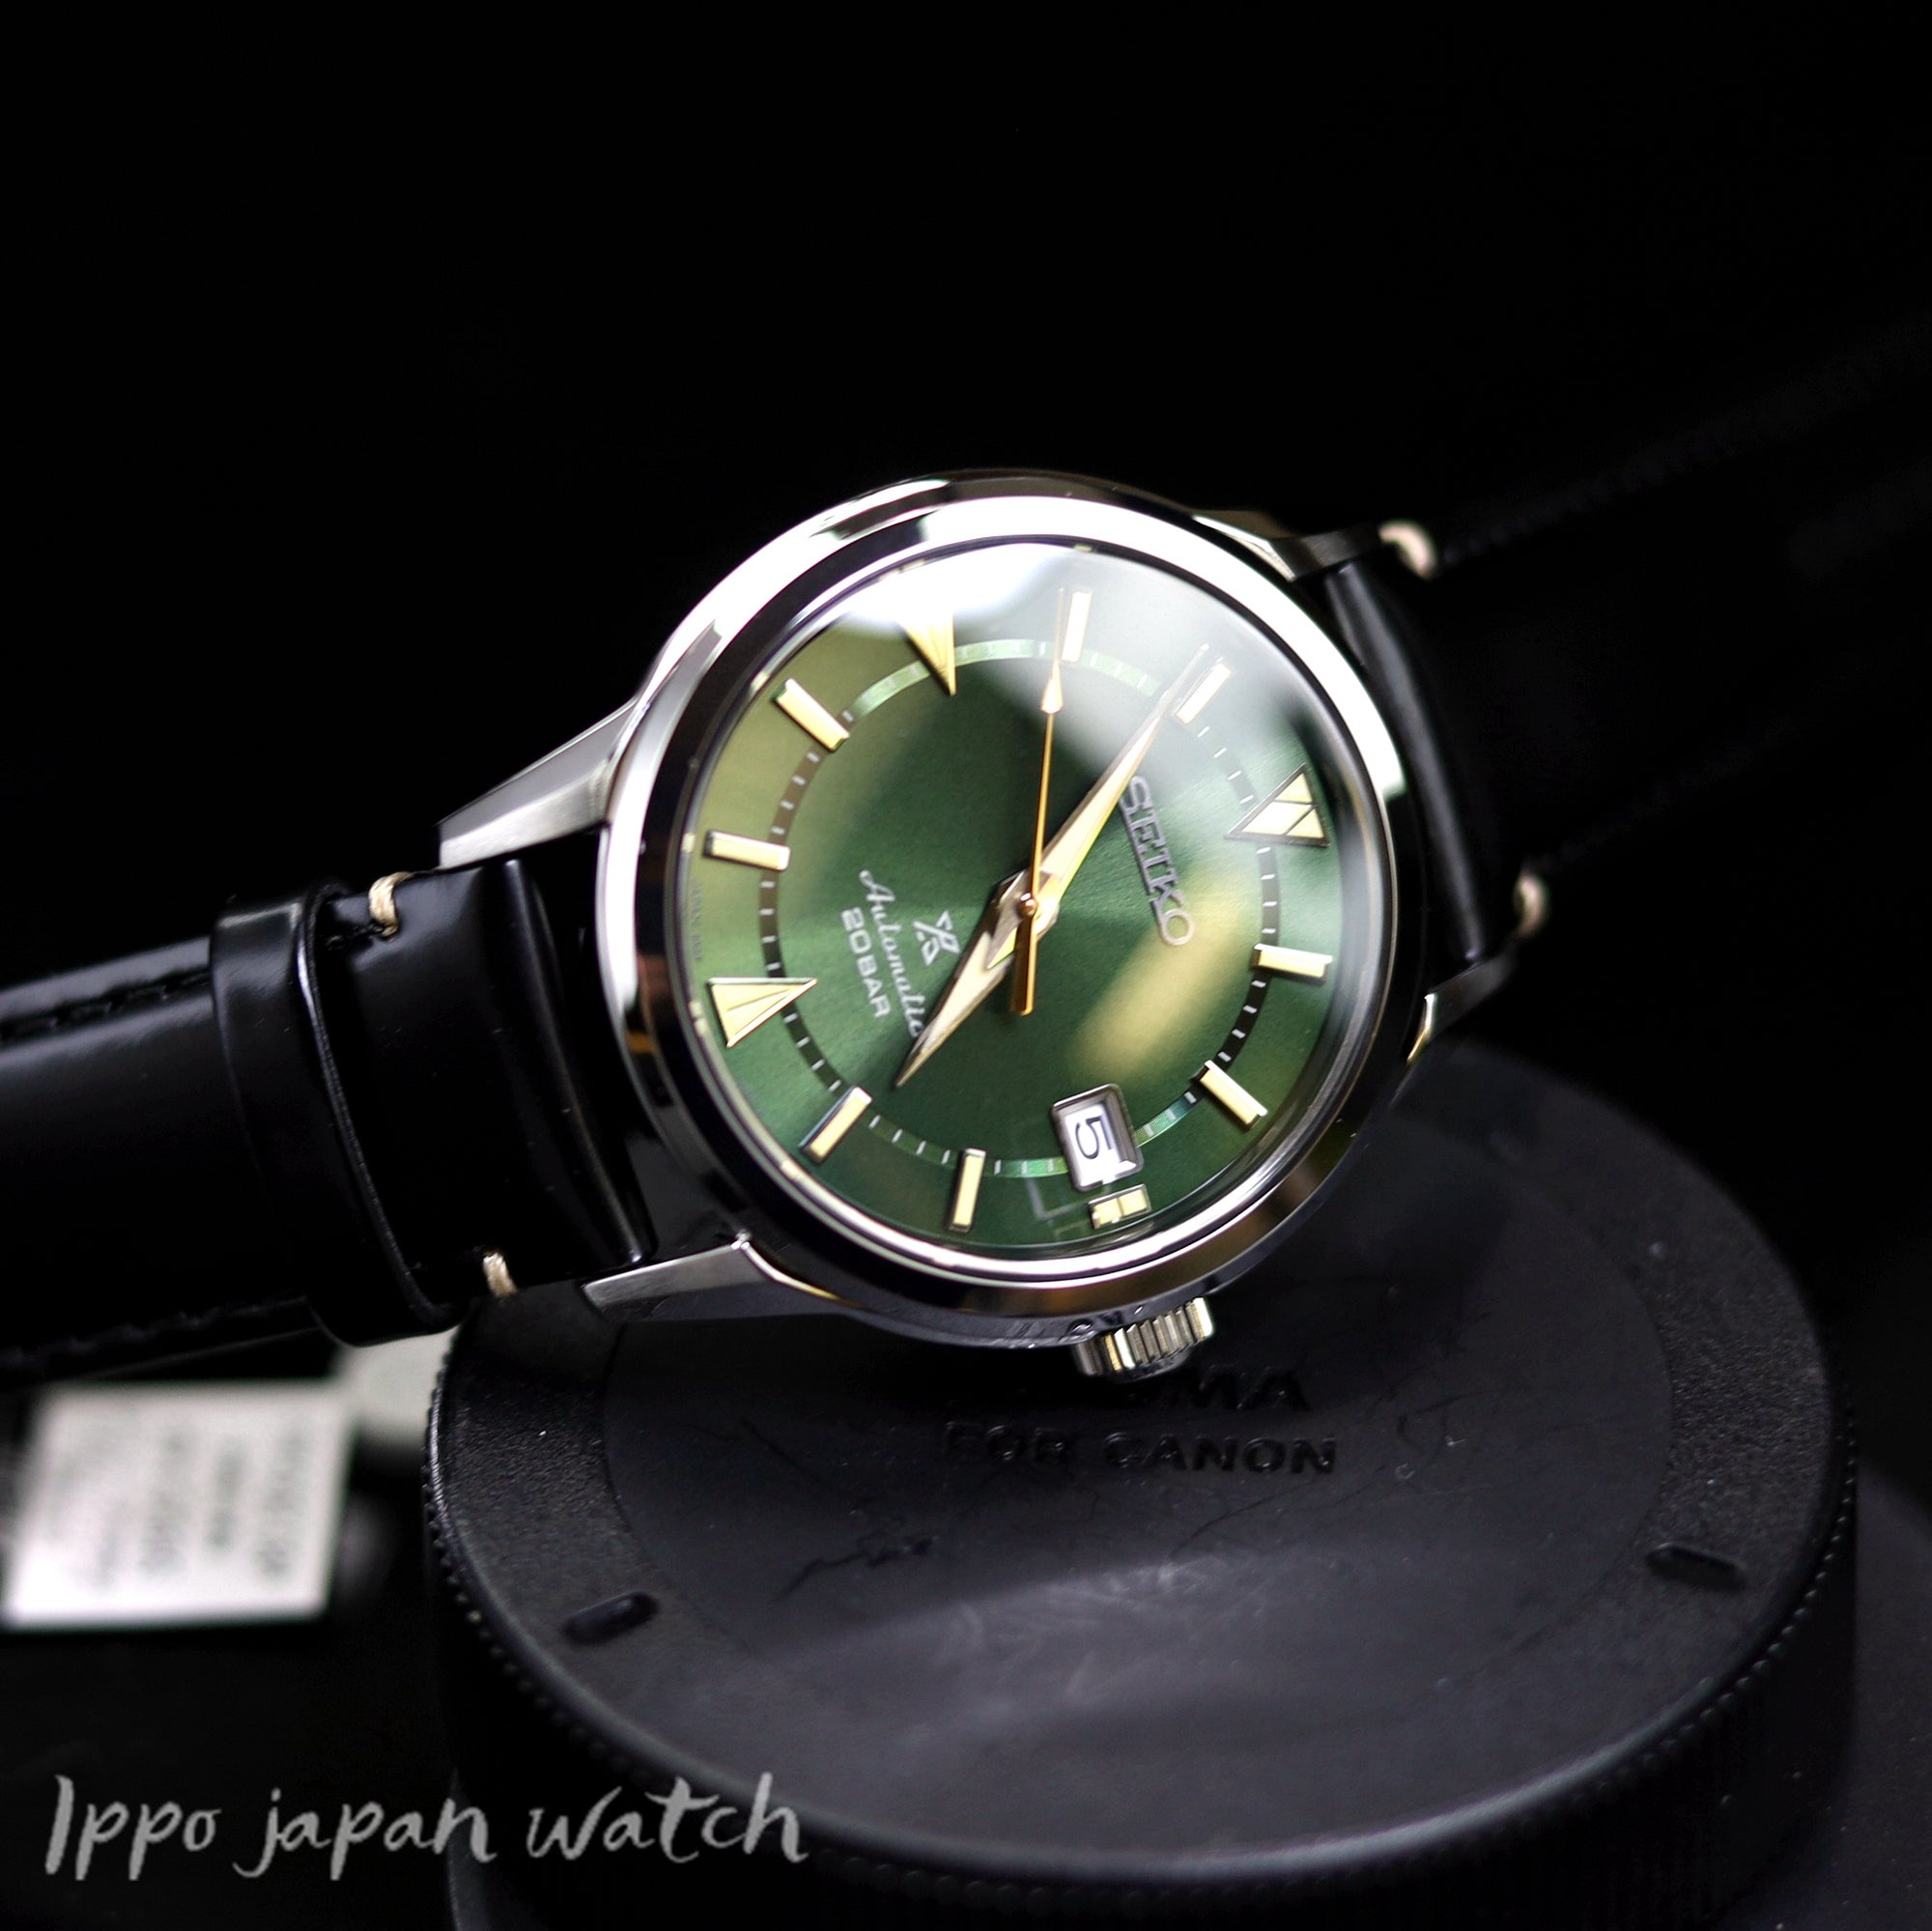 Seiko  Prospex SBDC149 SPB245J1 Automatic 20 bar watch - IPPO JAPAN WATCH 